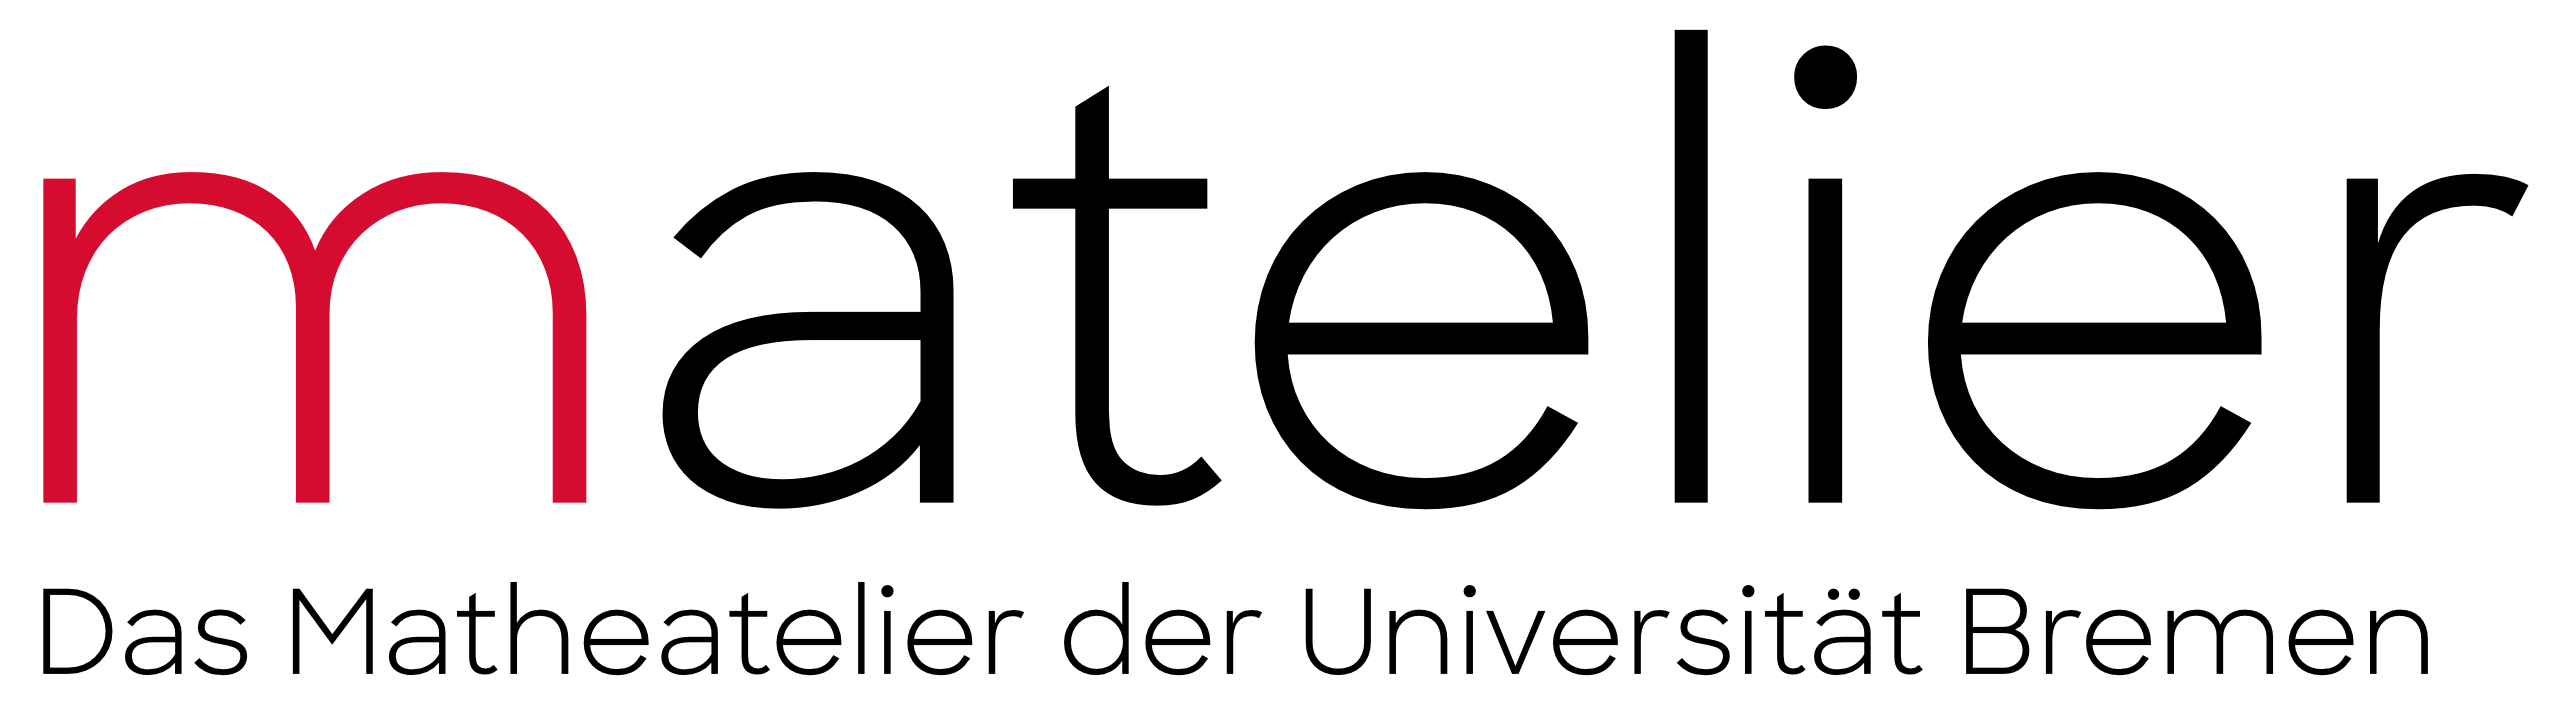 Logo des Matelier: Schriftzug "matelier", darunter kleiner "Das Matheatelier an der Universität Bremen"